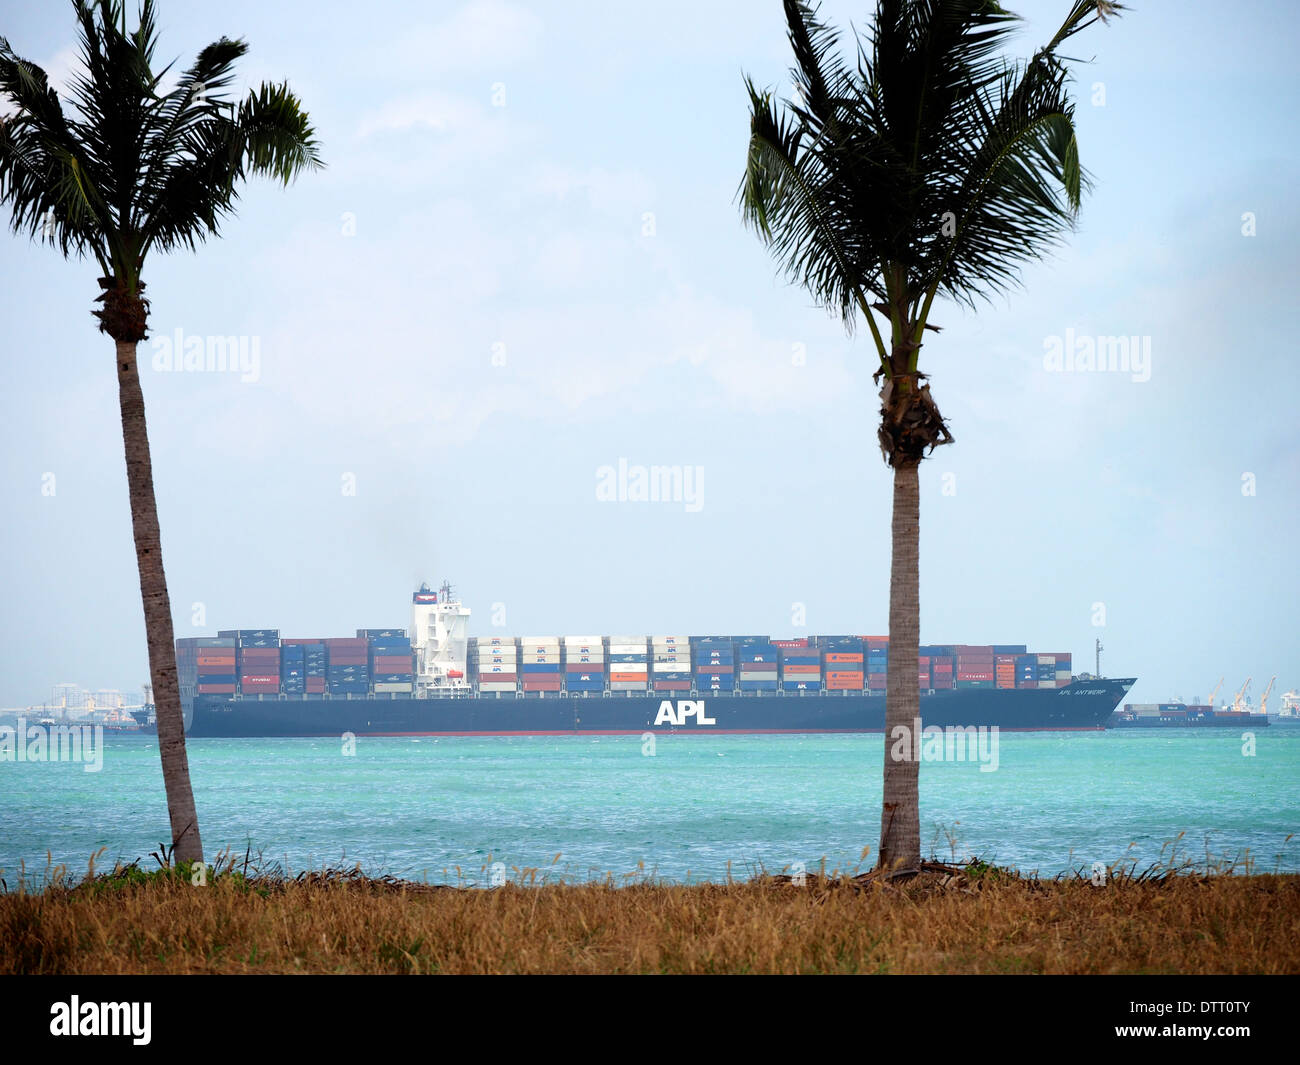 Contenitore APL navi ormeggiate vicino Lazurus Isola, Singapore meridionale dell'isola. Foto Stock